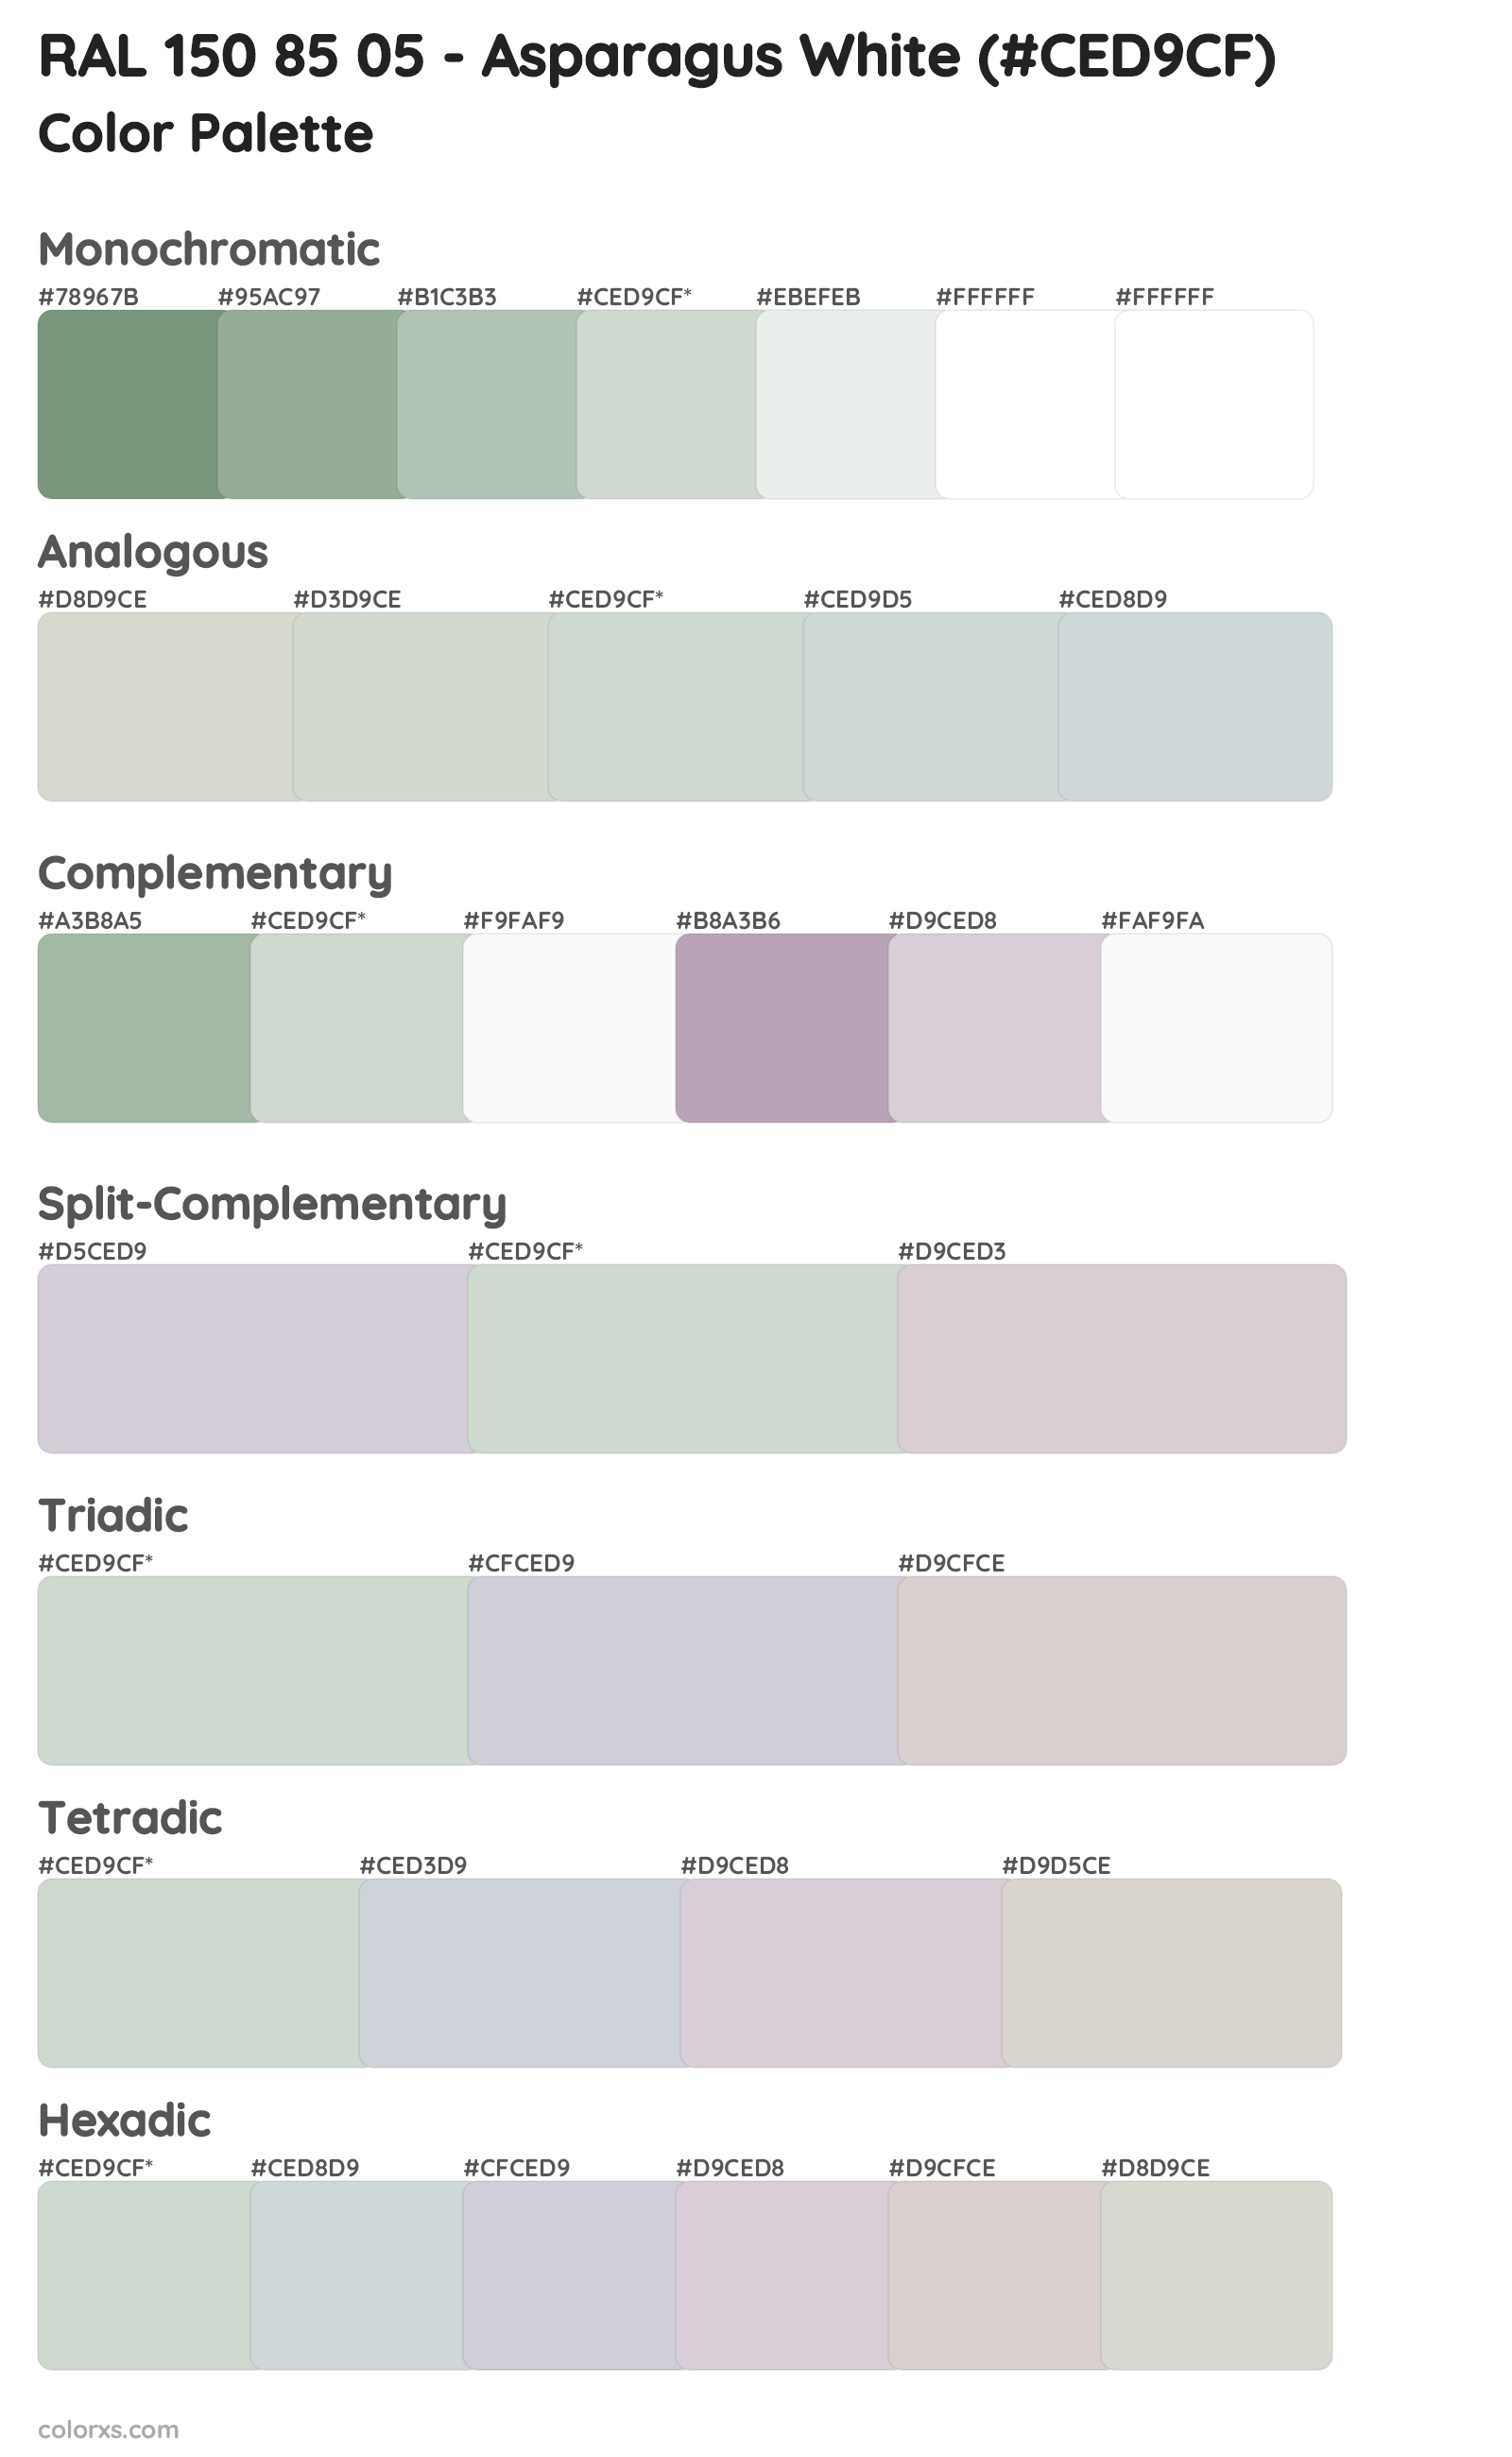 RAL 150 85 05 - Asparagus White Color Scheme Palettes